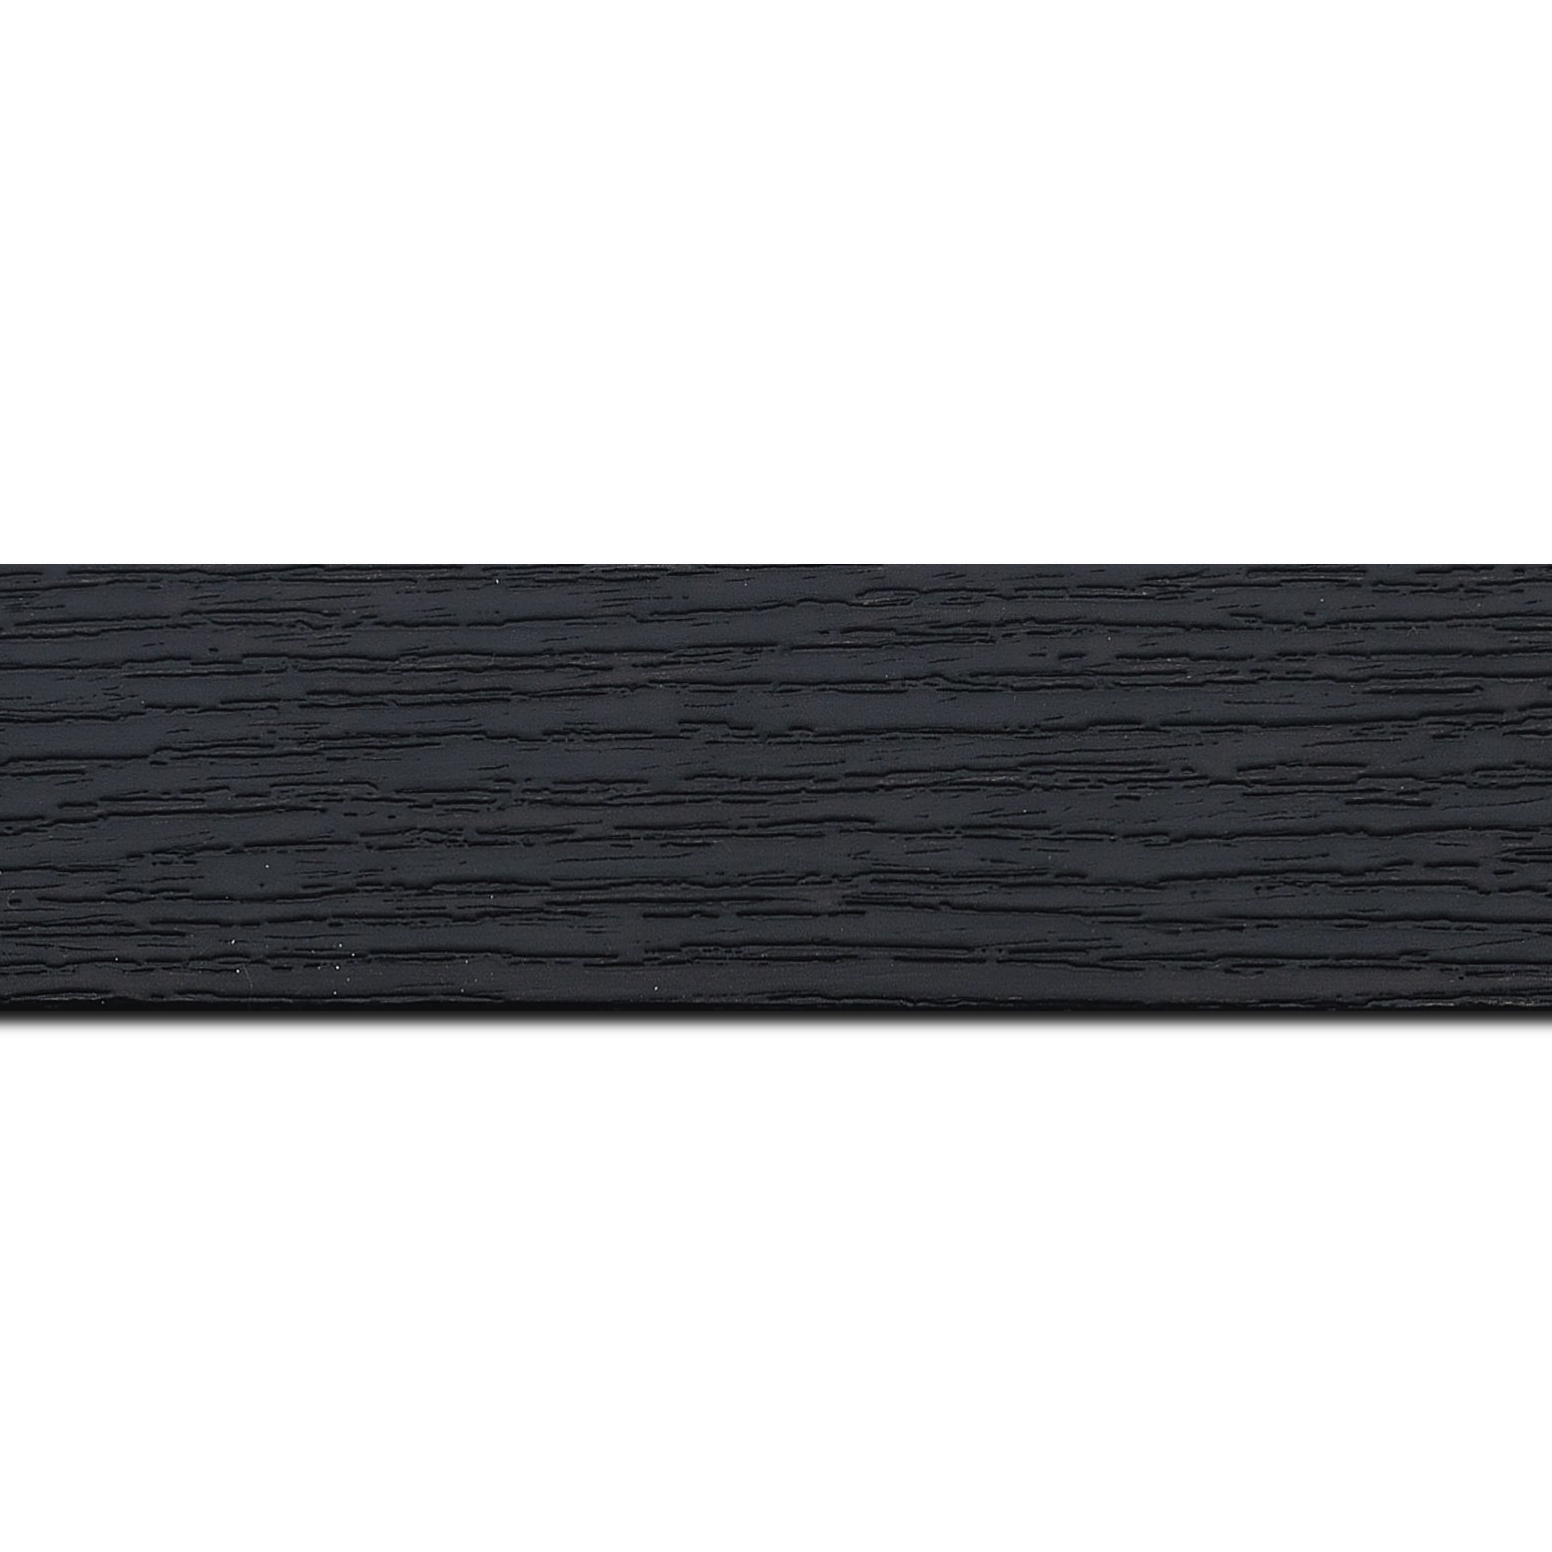 Pack par 12m, bois profil plat largeur 4.4cm couleur noir ébène  finition veiné (longueur baguette pouvant varier entre 2.40m et 3m selon arrivage des bois)